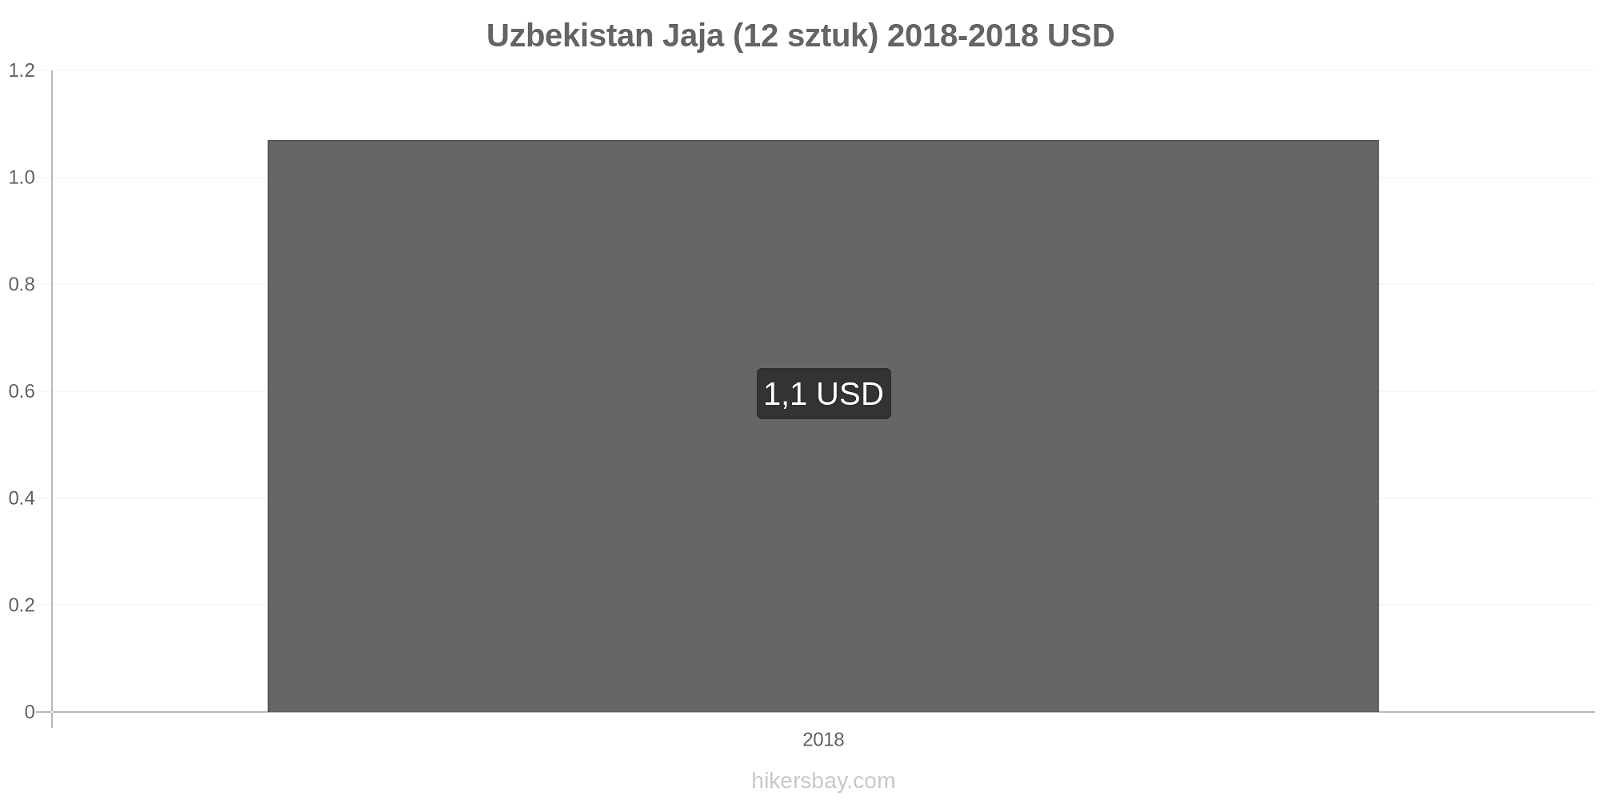 Uzbekistan zmiany cen Jaja 12 sztuk hikersbay.com